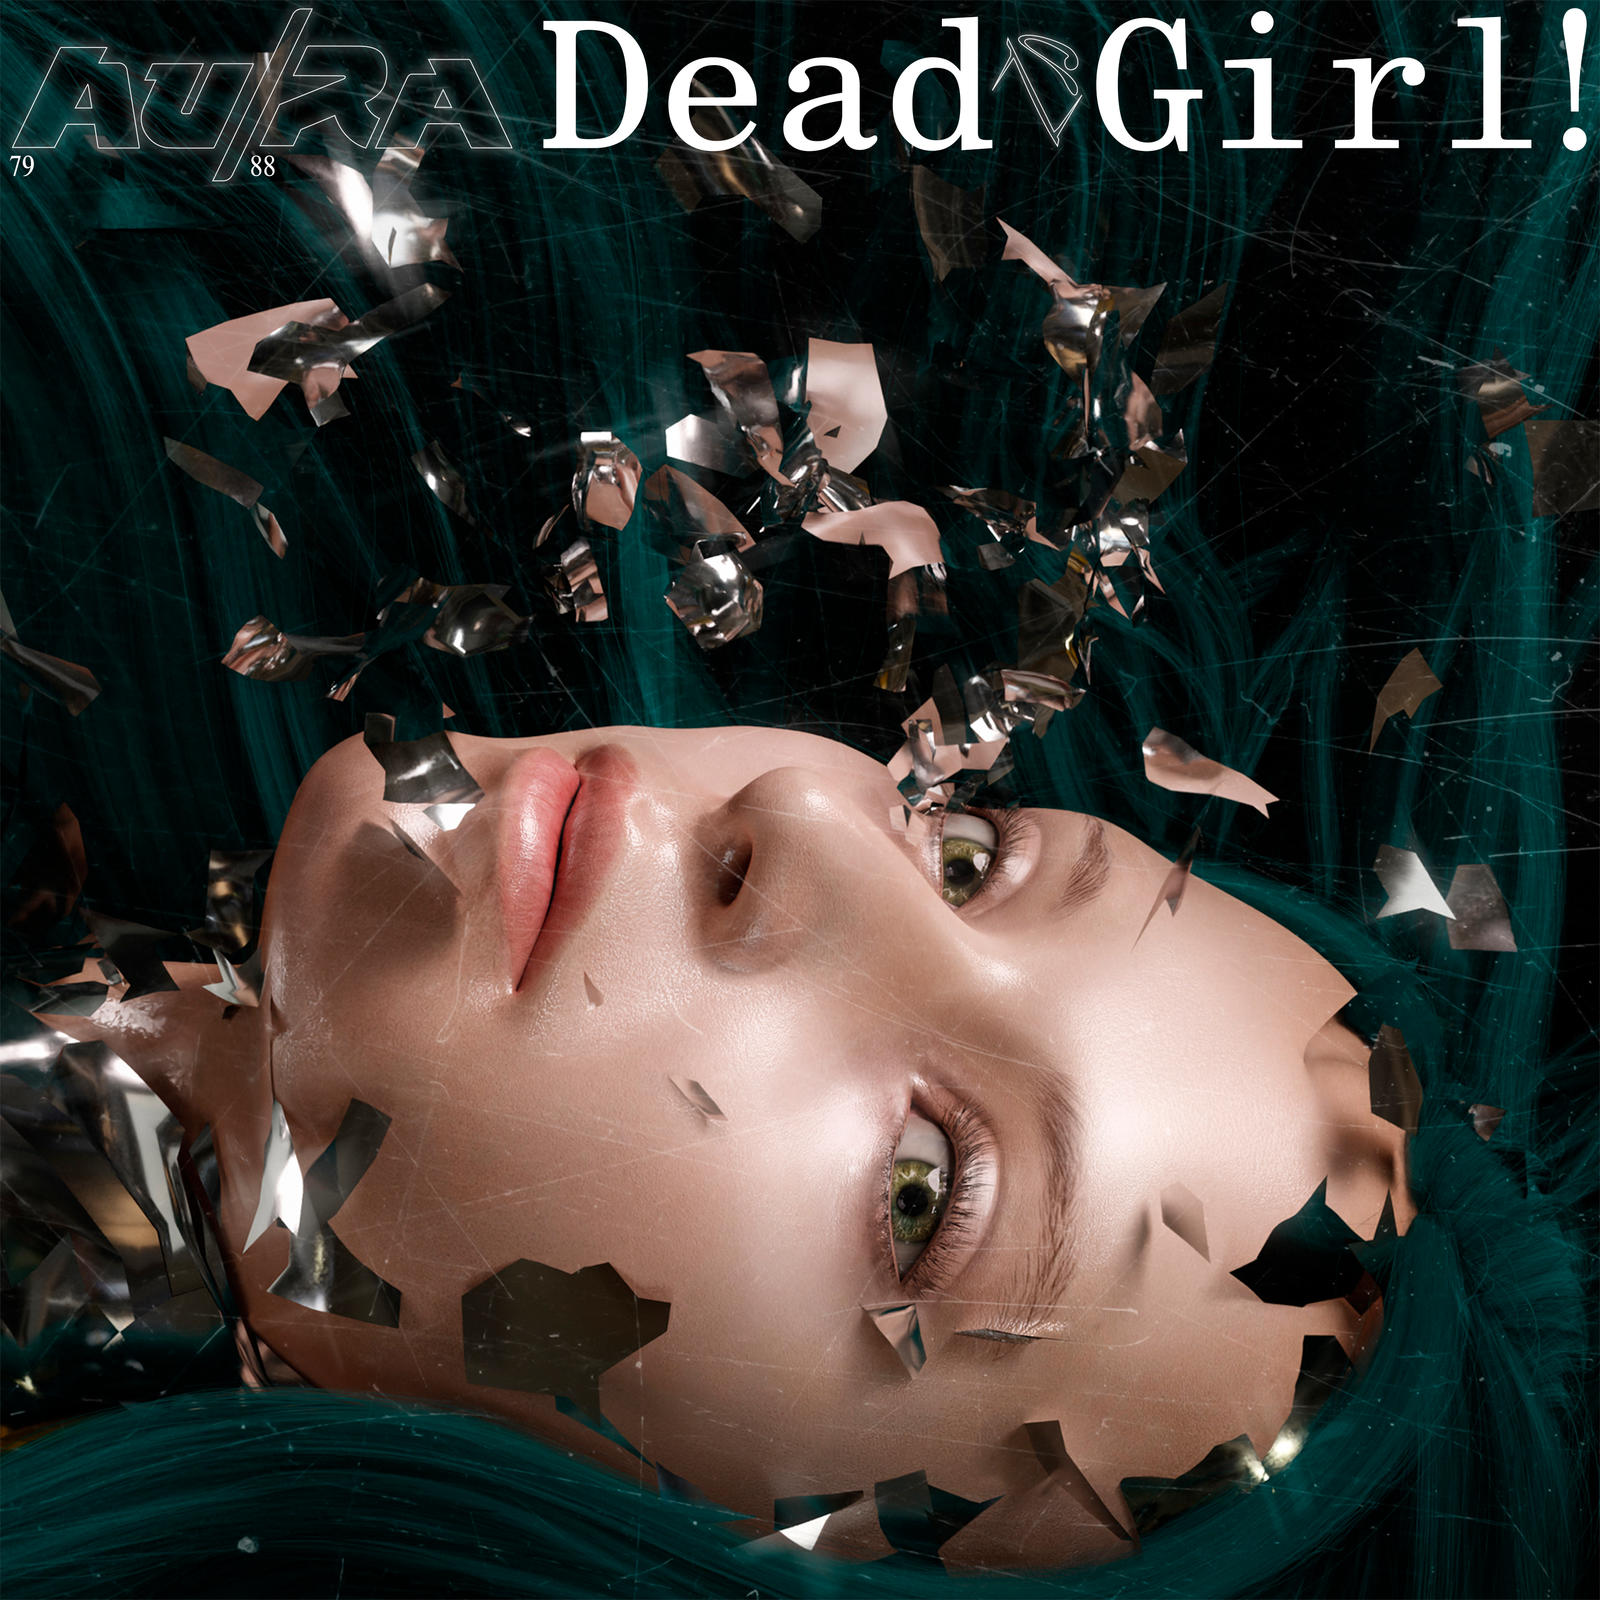 AuRa - Dead Girl! (Alan Walker Remix)